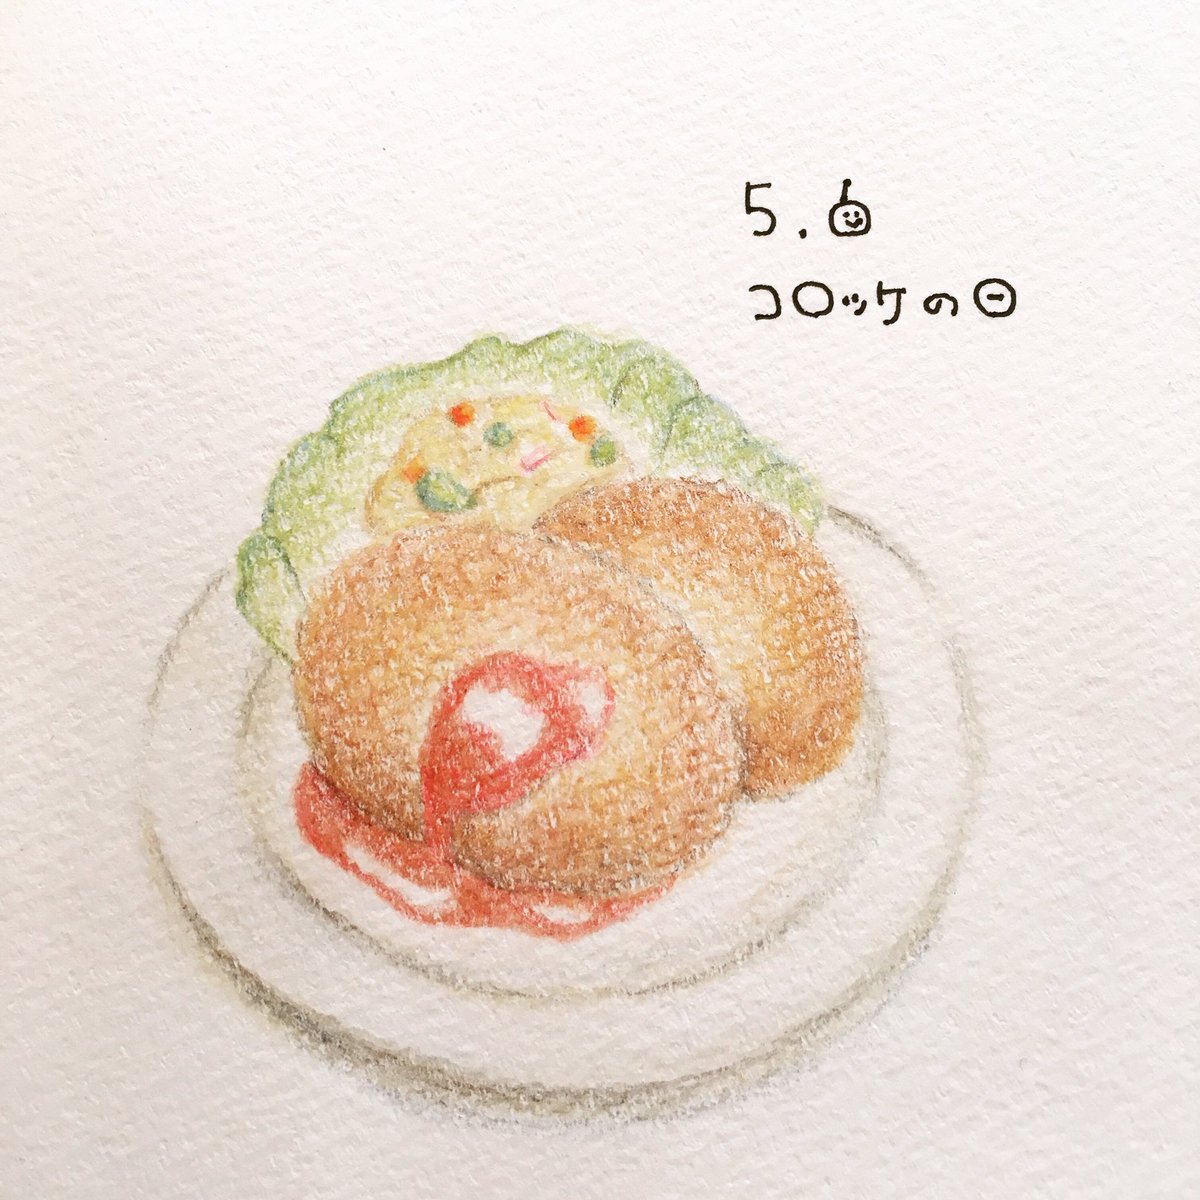 日めくり 手書きイラストレーター Ar Twitter 19年5月6日 コロッケの日 語呂にちなんで記念日に コロッケ大好きです コロッケ 食べ物イラスト